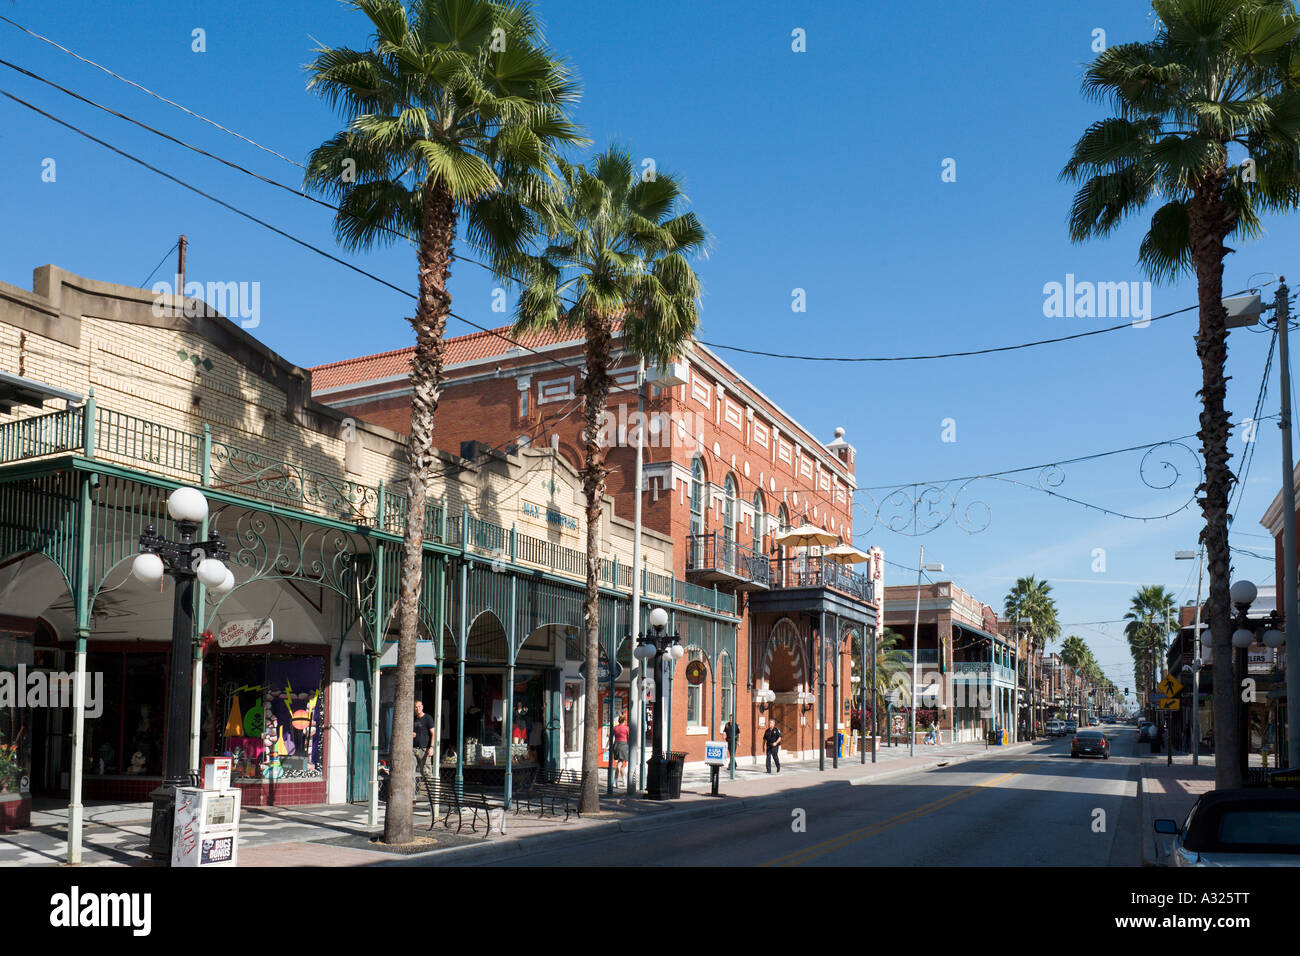 Calle típica, Centro Histórico Ybor City, Tampa, la Costa del Golfo, Florida, EE.UU. Foto de stock